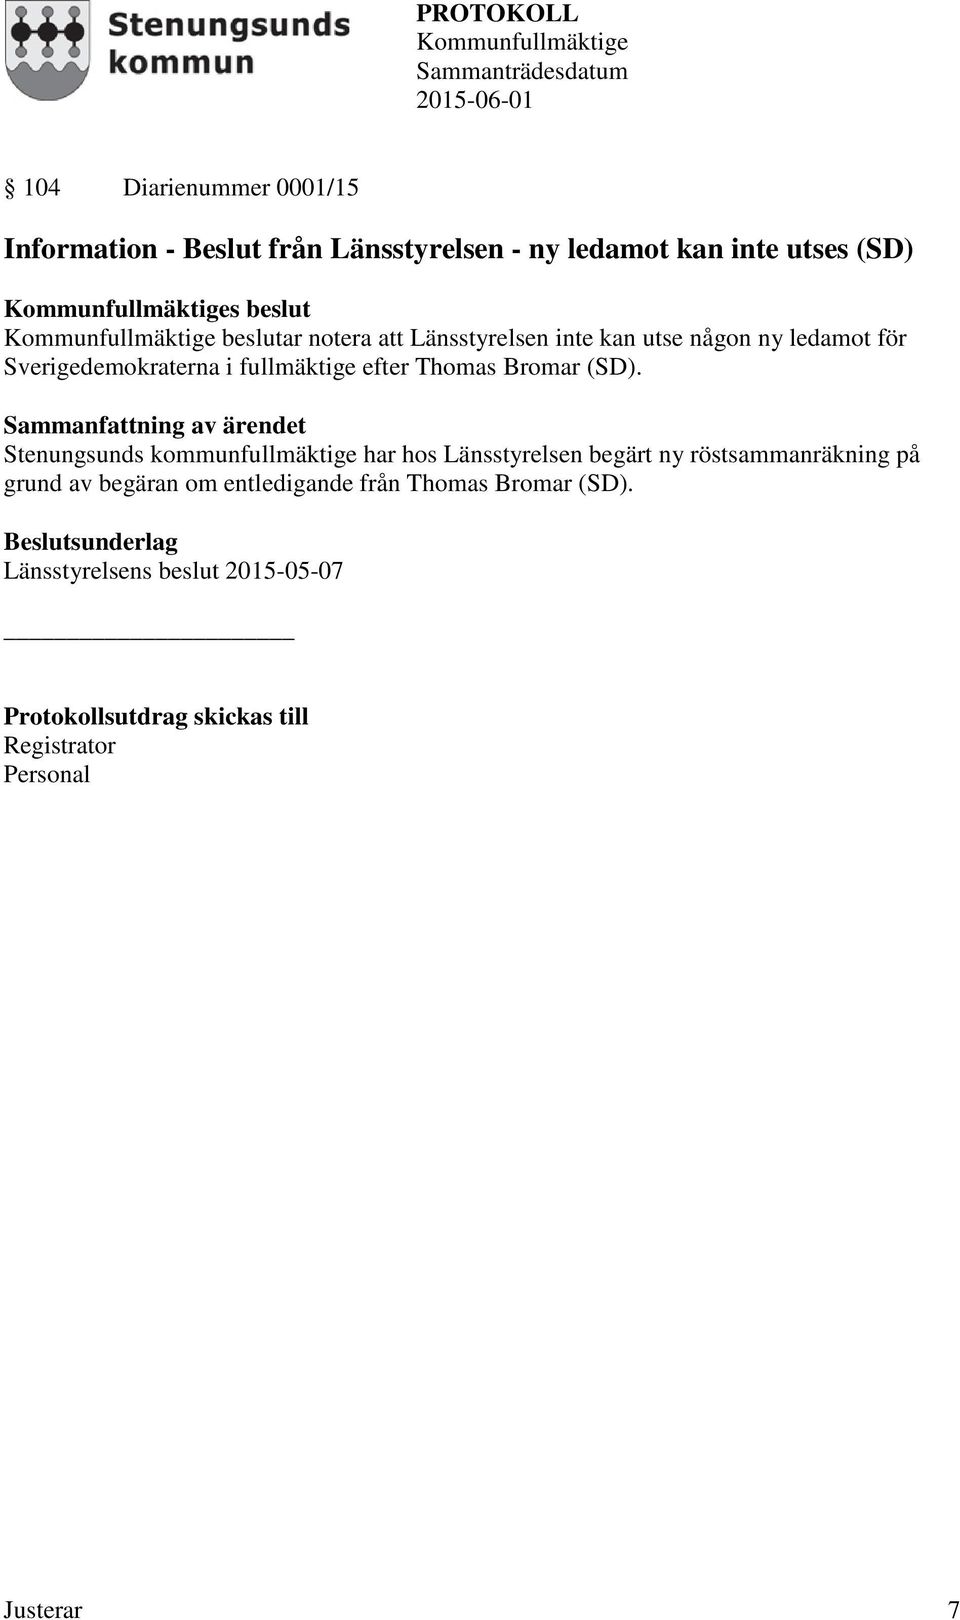 (SD). Stenungsunds kommunfullmäktige har hos Länsstyrelsen begärt ny röstsammanräkning på grund av begäran om